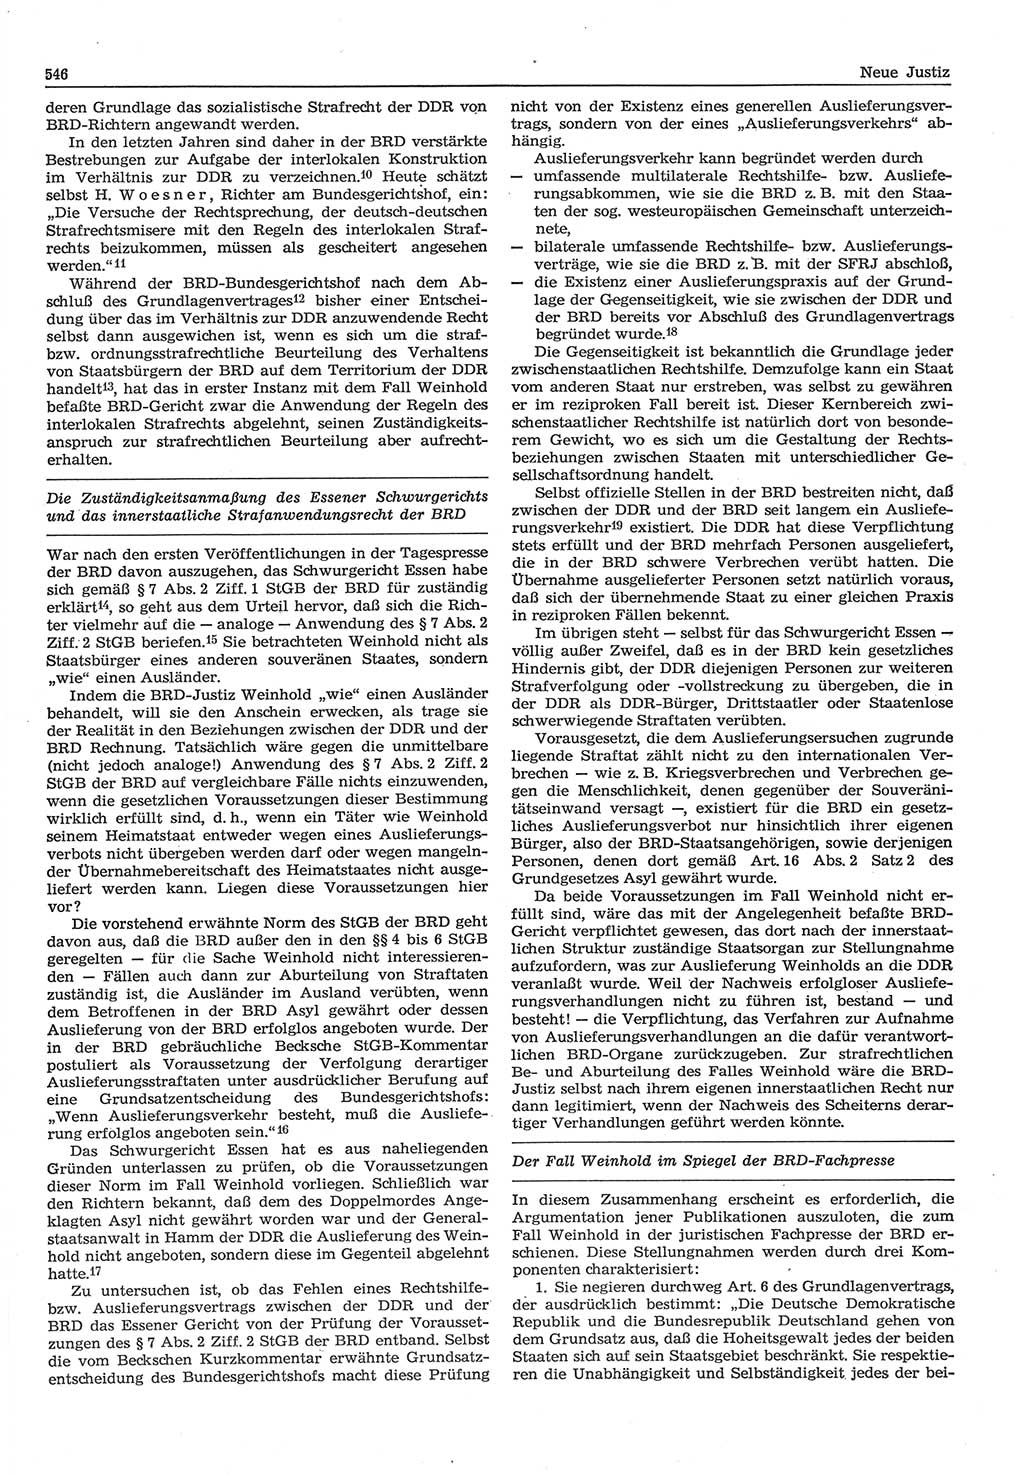 Neue Justiz (NJ), Zeitschrift für Recht und Rechtswissenschaft-Zeitschrift, sozialistisches Recht und Gesetzlichkeit, 31. Jahrgang 1977, Seite 546 (NJ DDR 1977, S. 546)